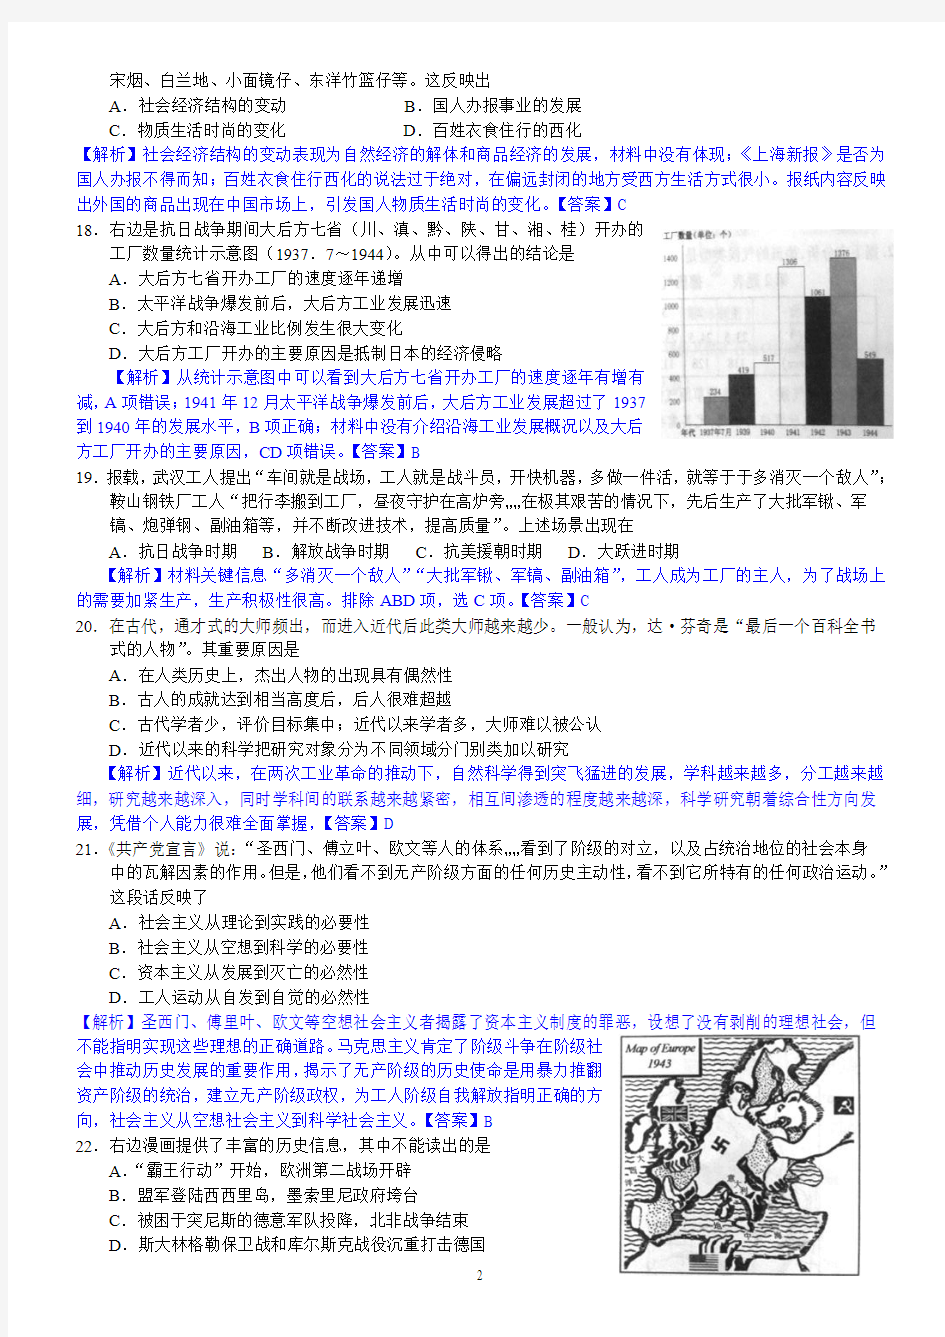 2012年高考真题——文综(浙江卷)历史解析版 (1)